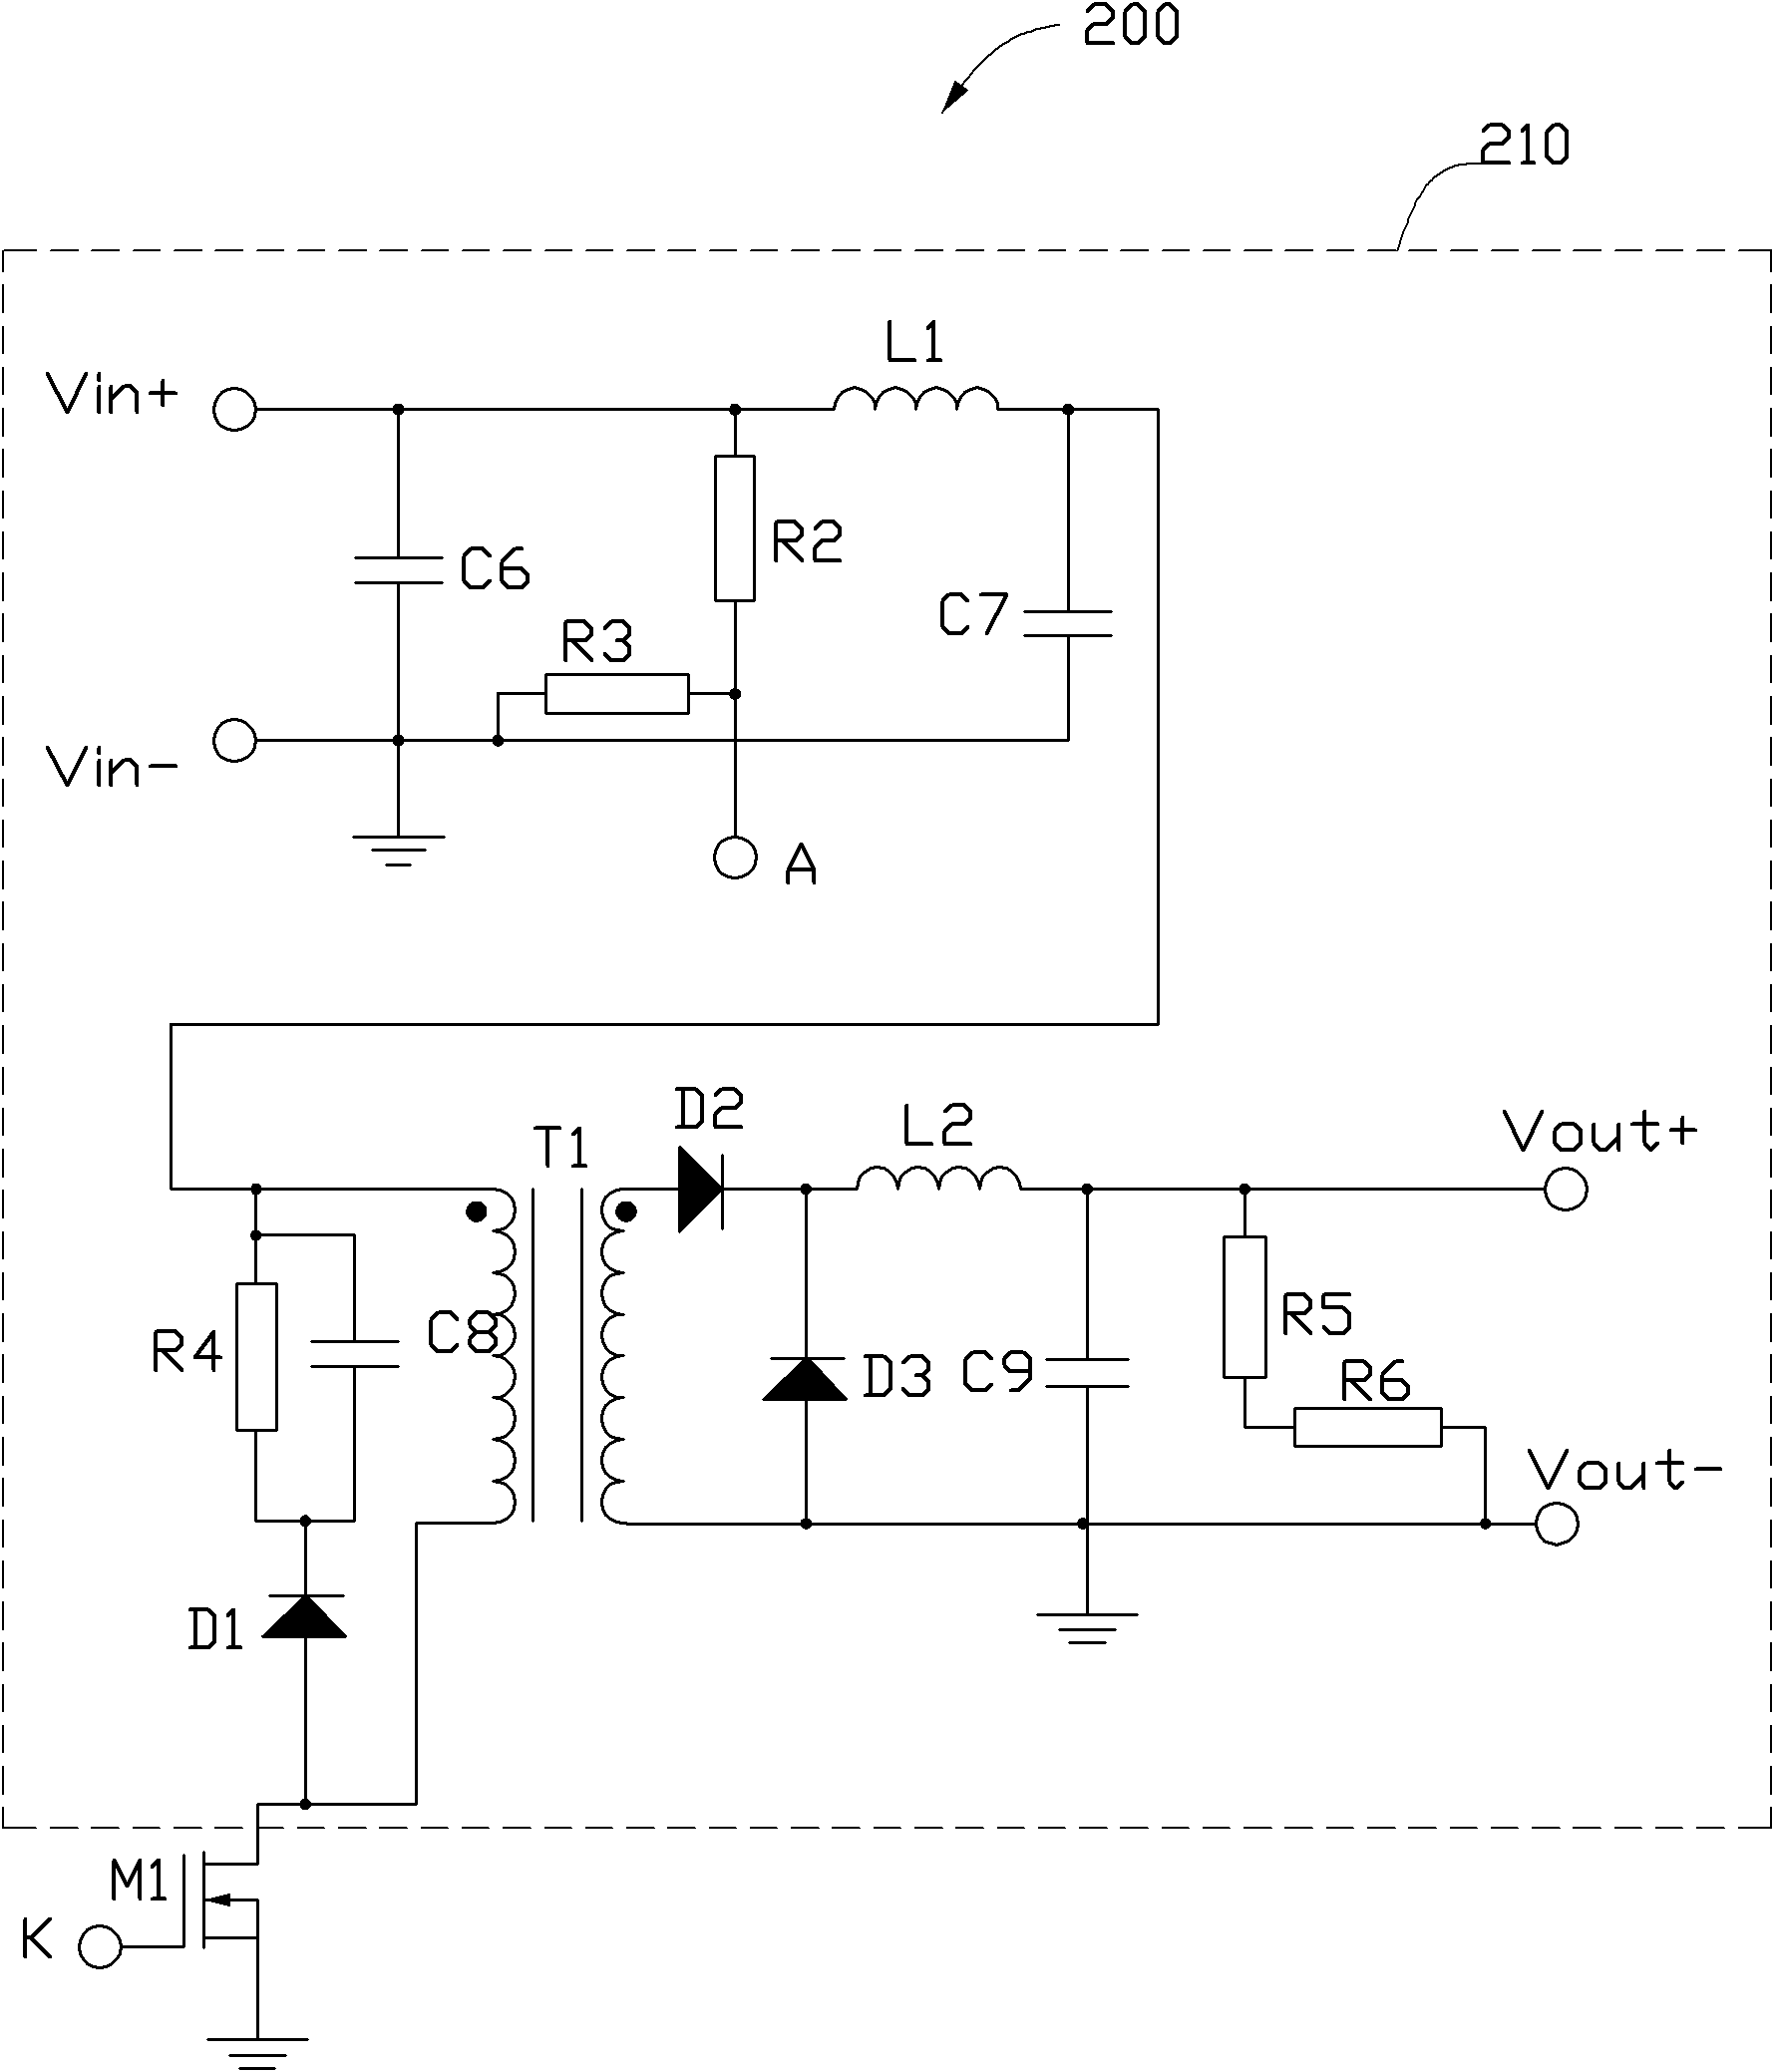 Resistance measuring circuit